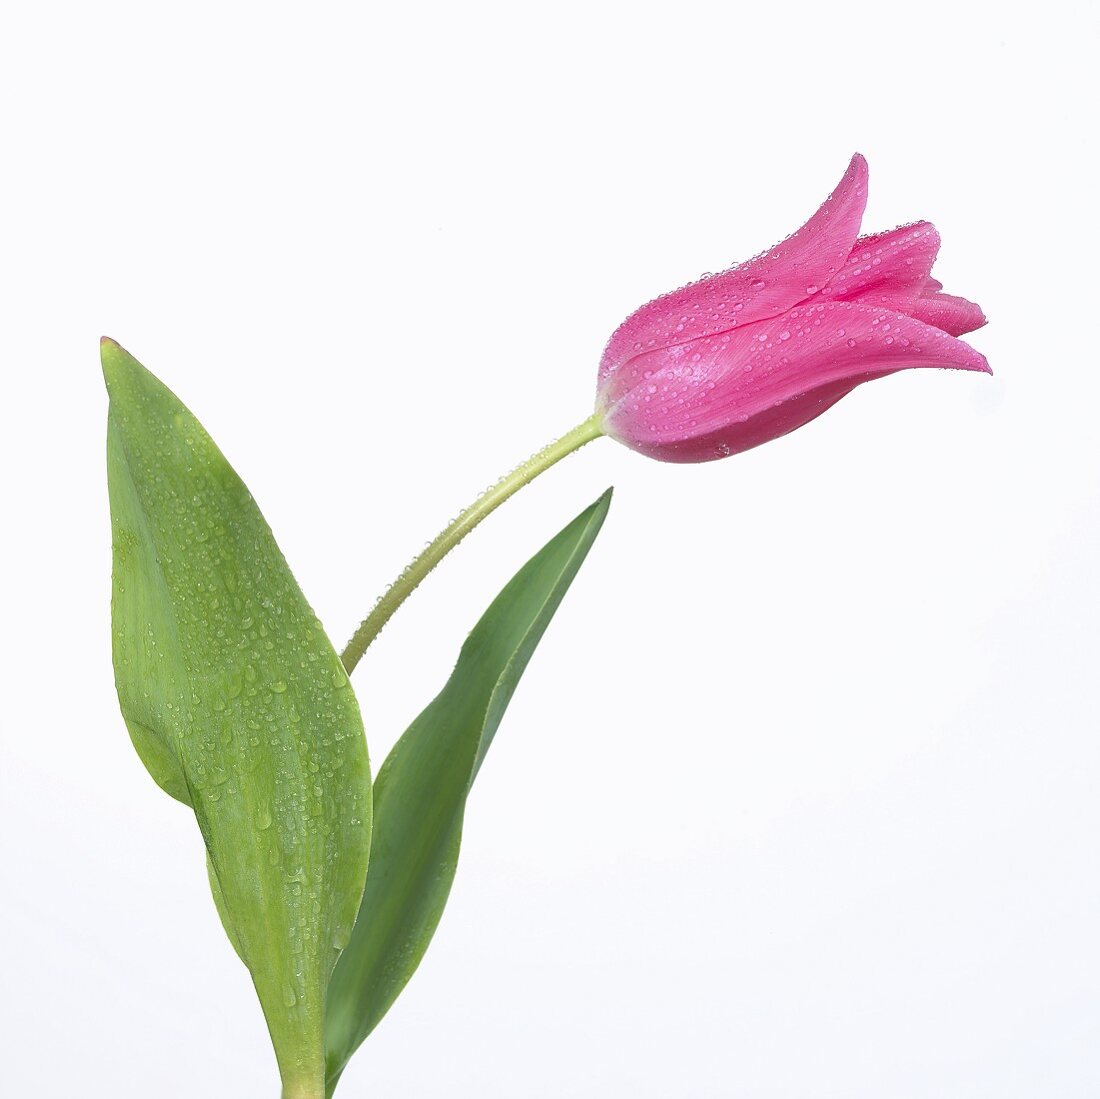 Pinkfarbene Tulpe mit Wassertropfen